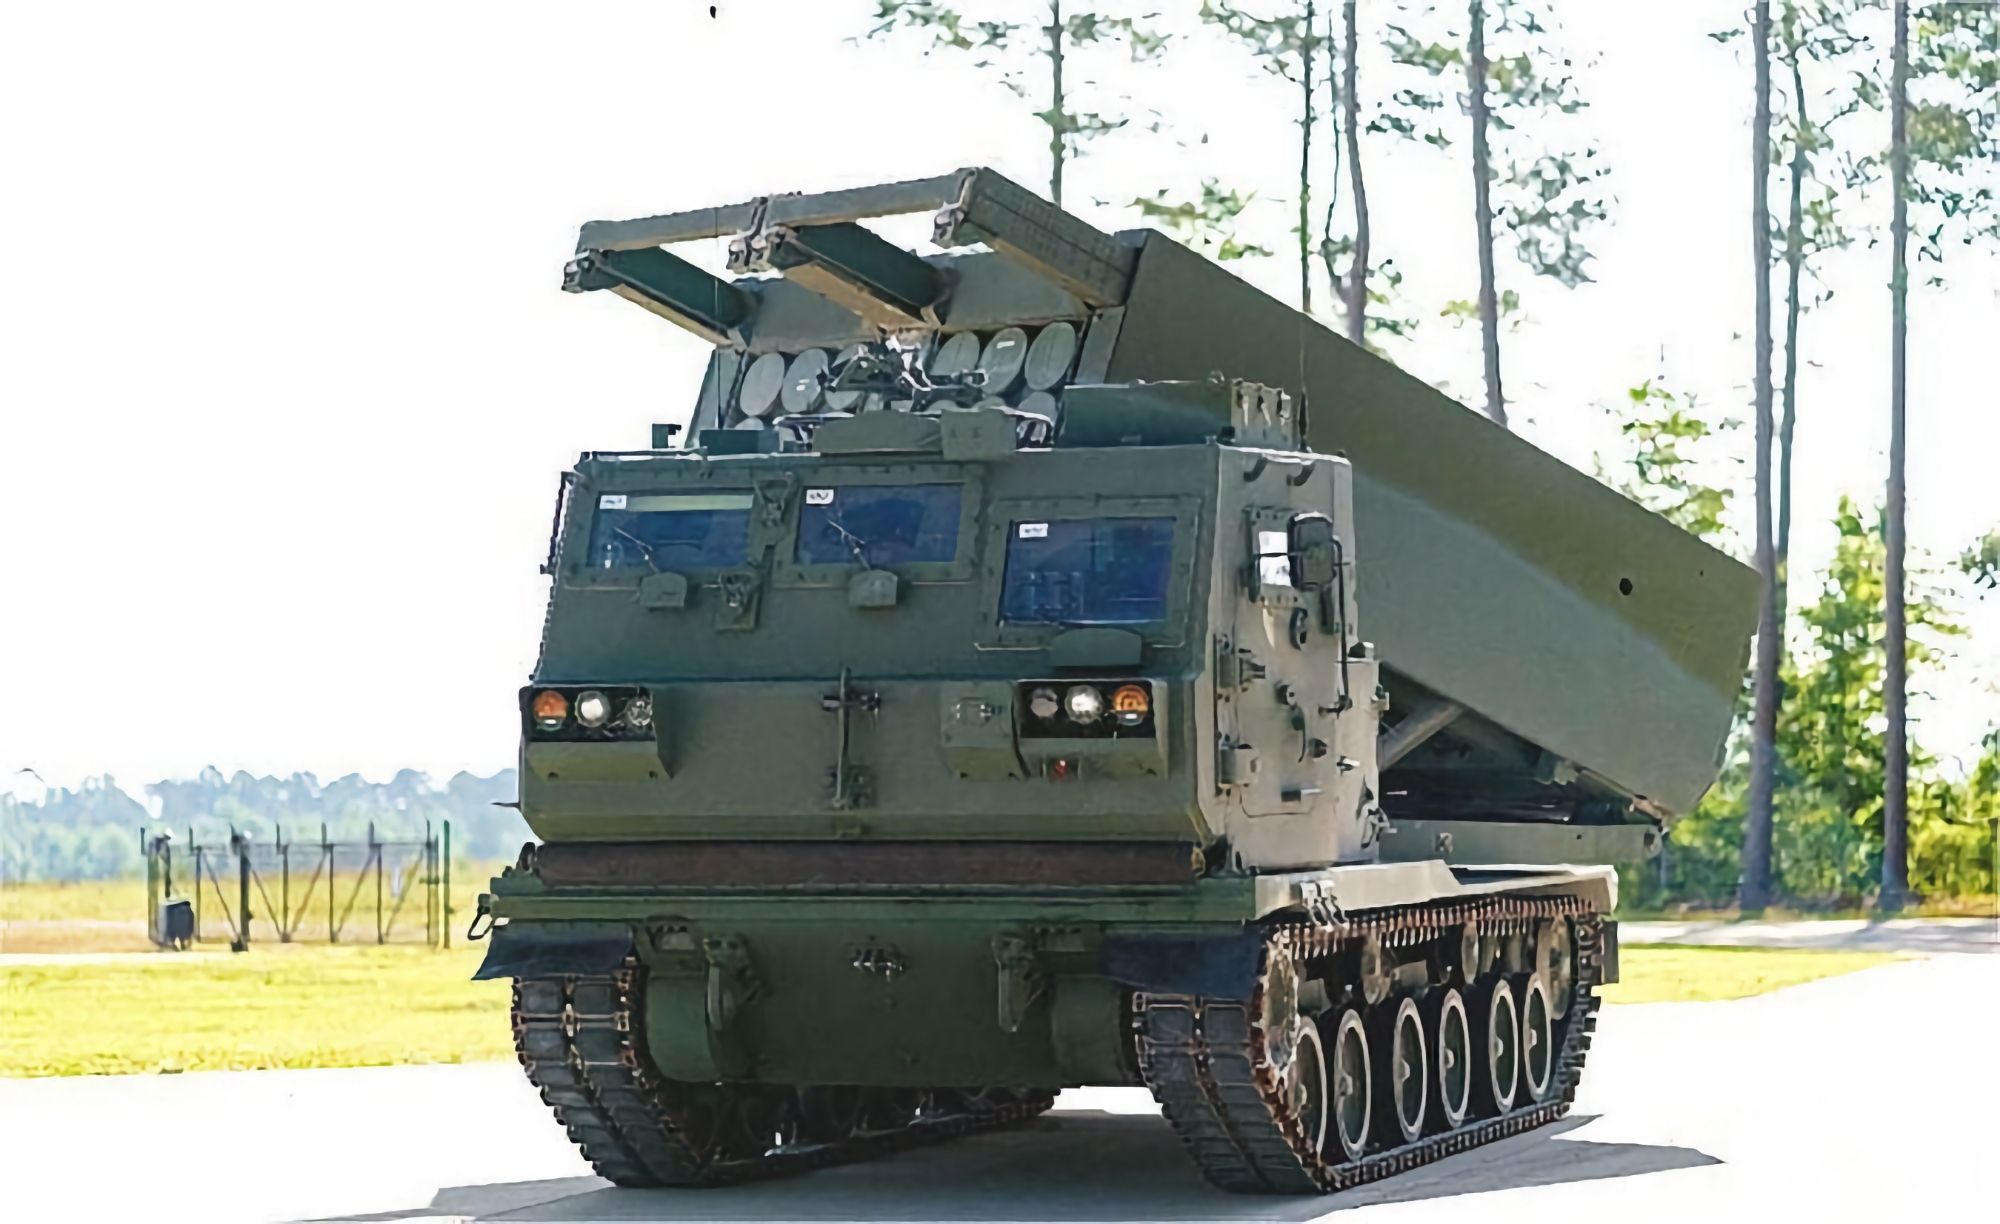 EE.UU. ha encargado a Lockheed Martin la modernización de nuevos lanzacohetes múltiples M270, que podrán lanzar misiles PrSM con un alcance de 500 kilómetros.